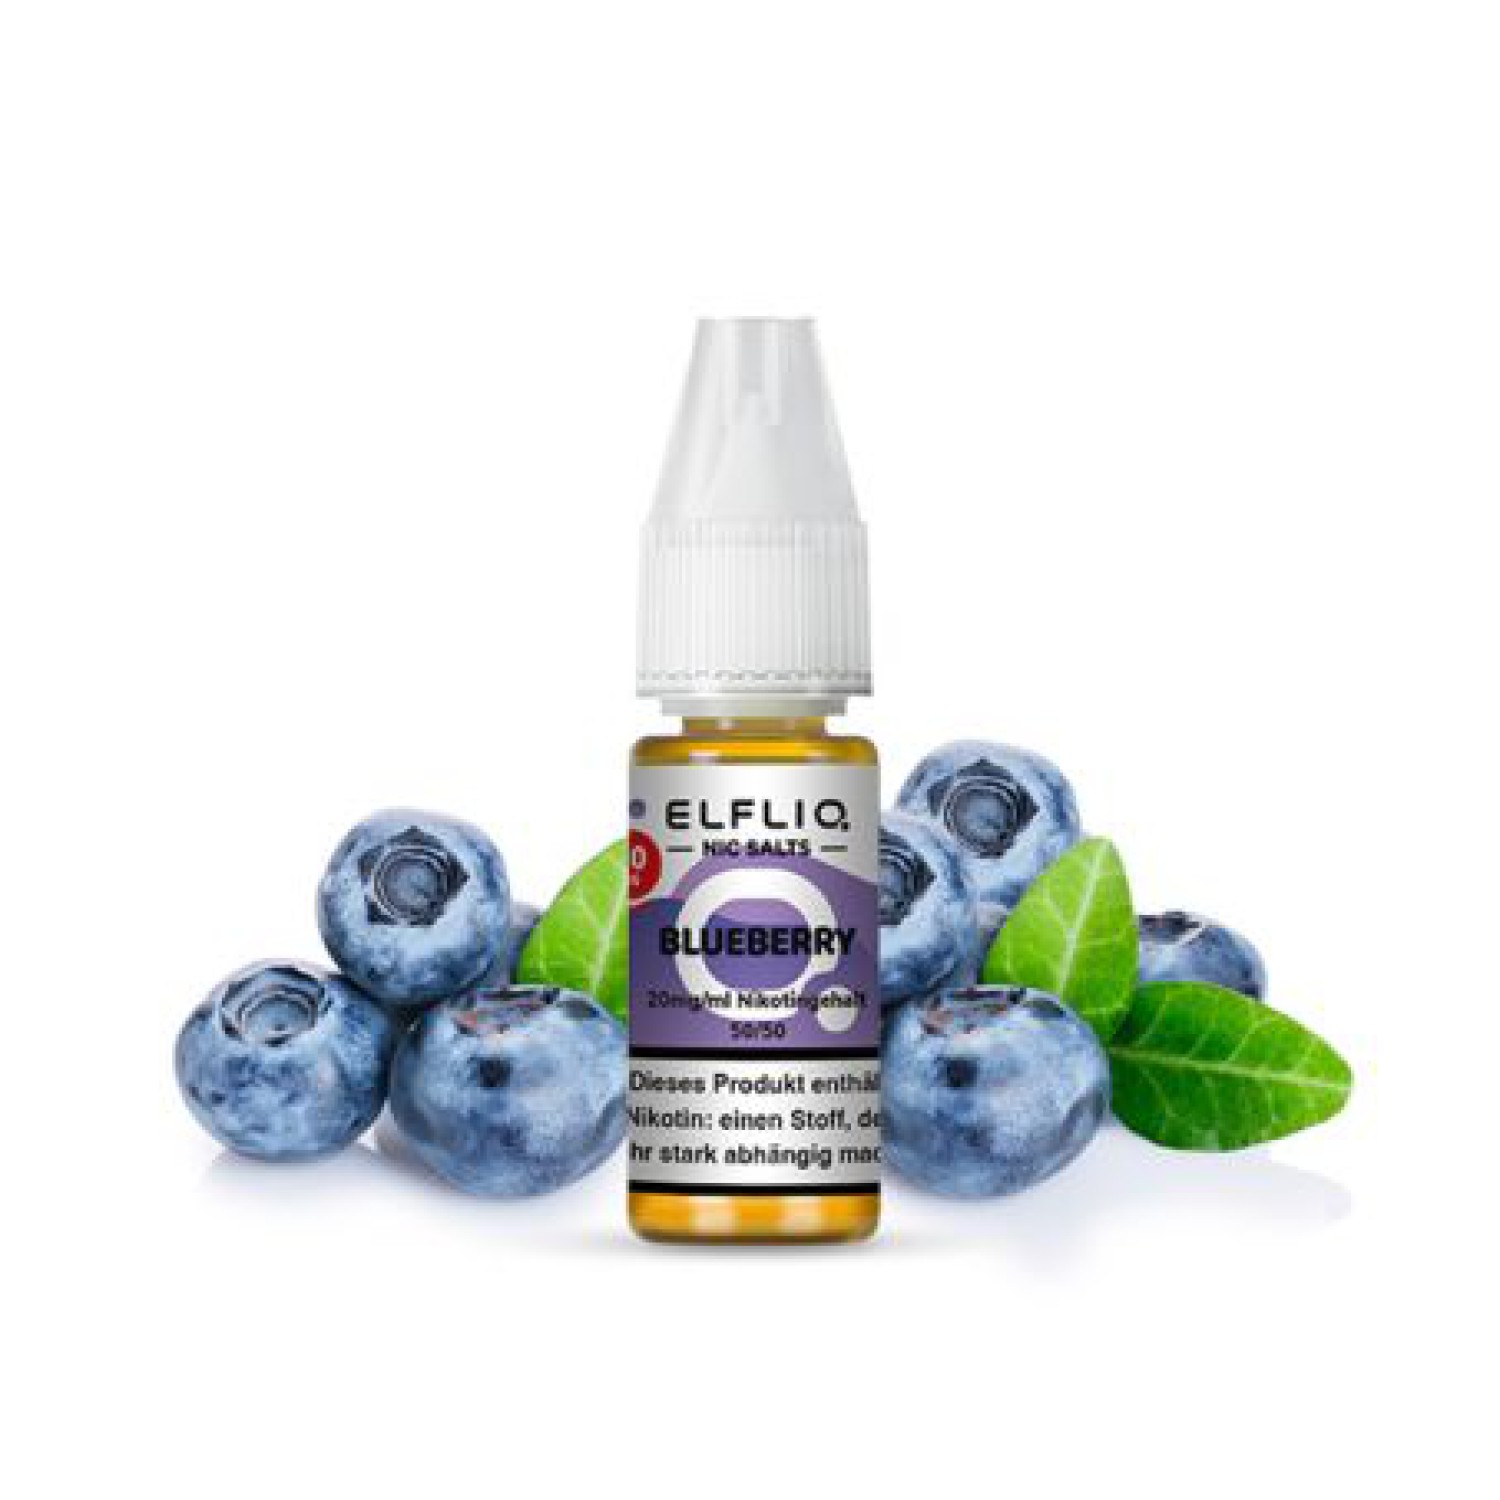 ELFBAR Elfliq 20mg " Blueberry "Nitotinsalz Liquid